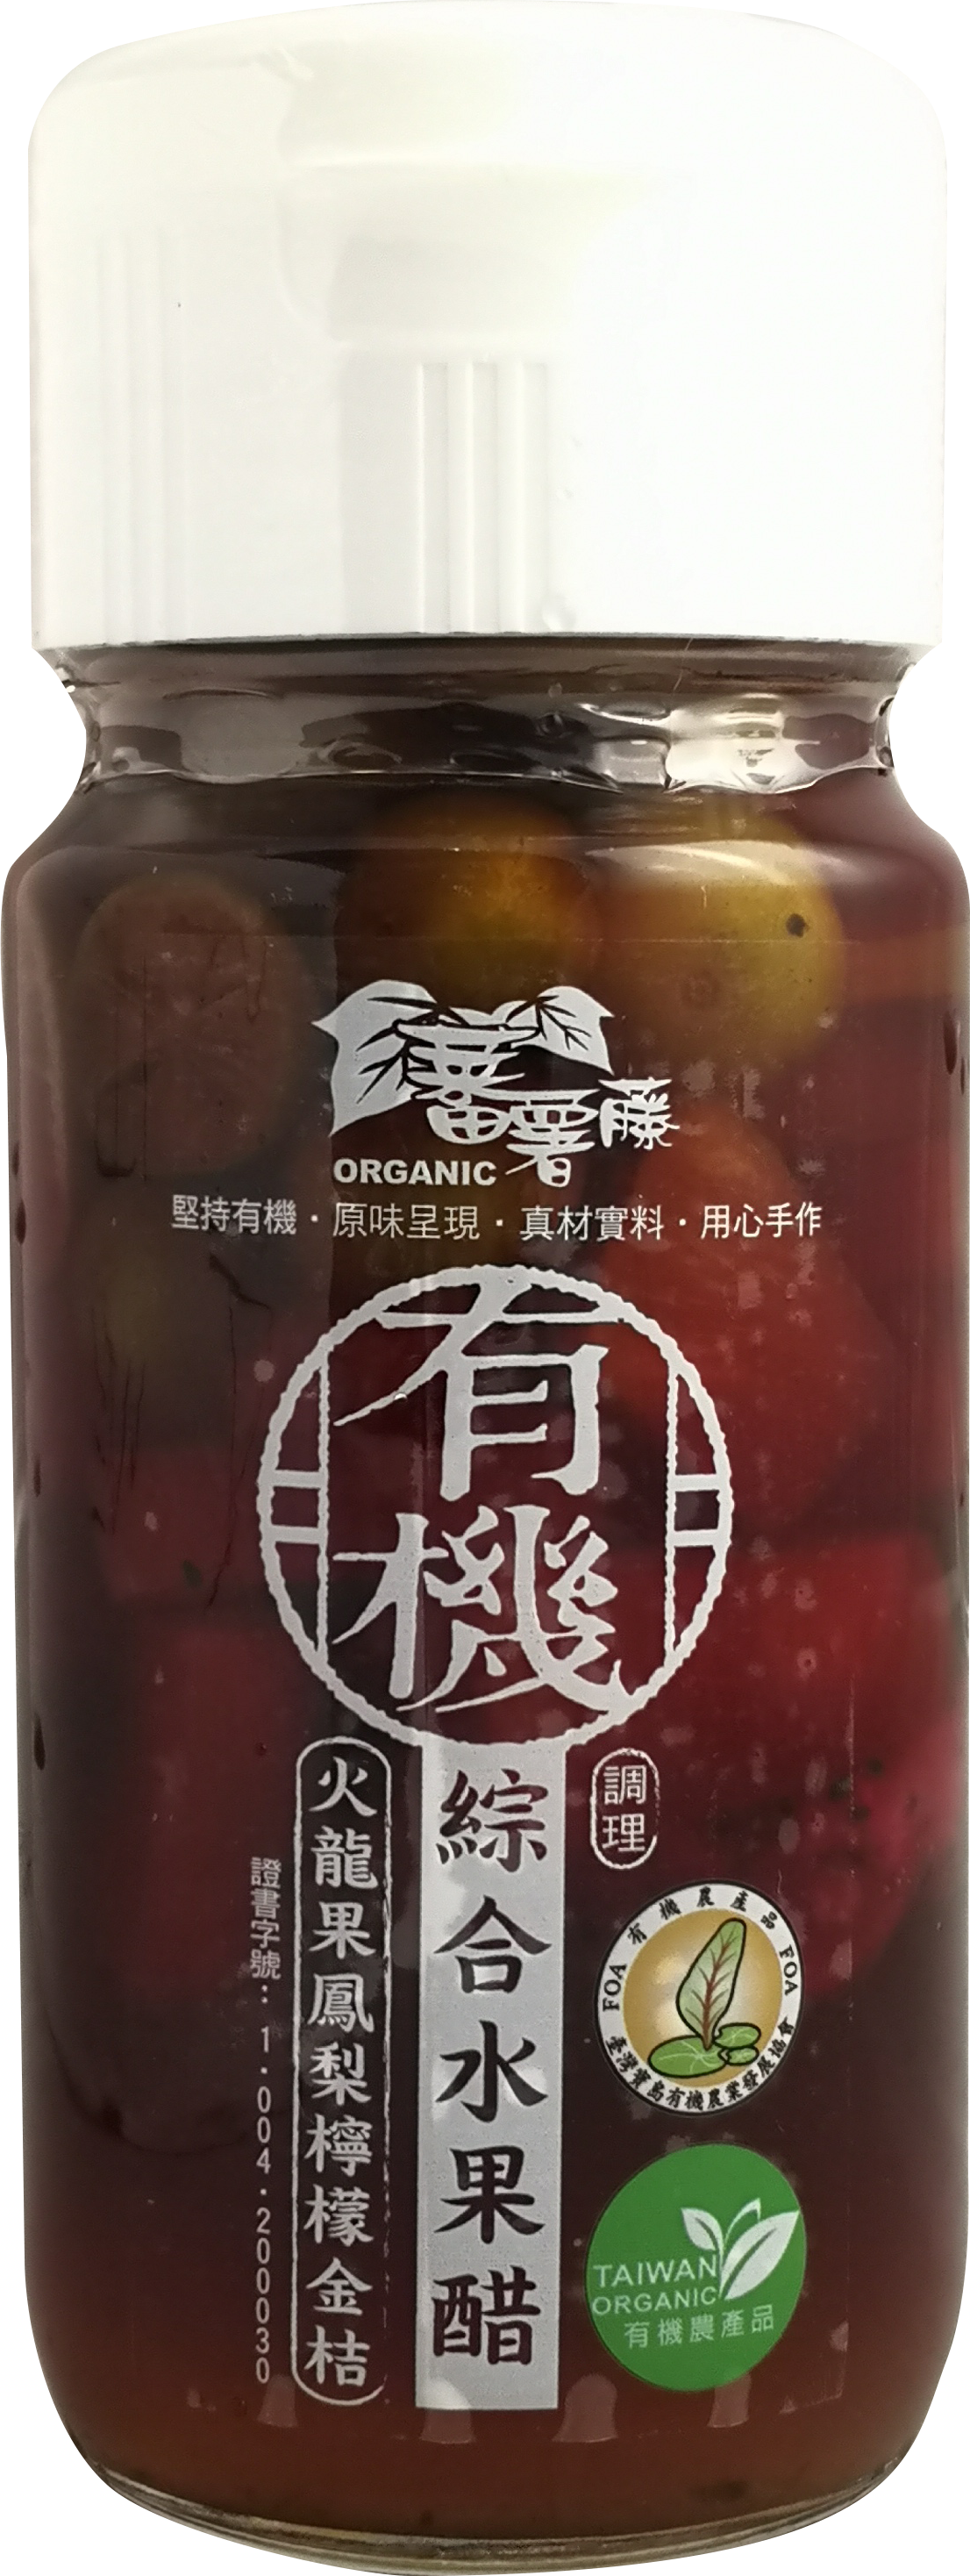 有機綜合水果醋-火龍果鳳梨檸檬金桔